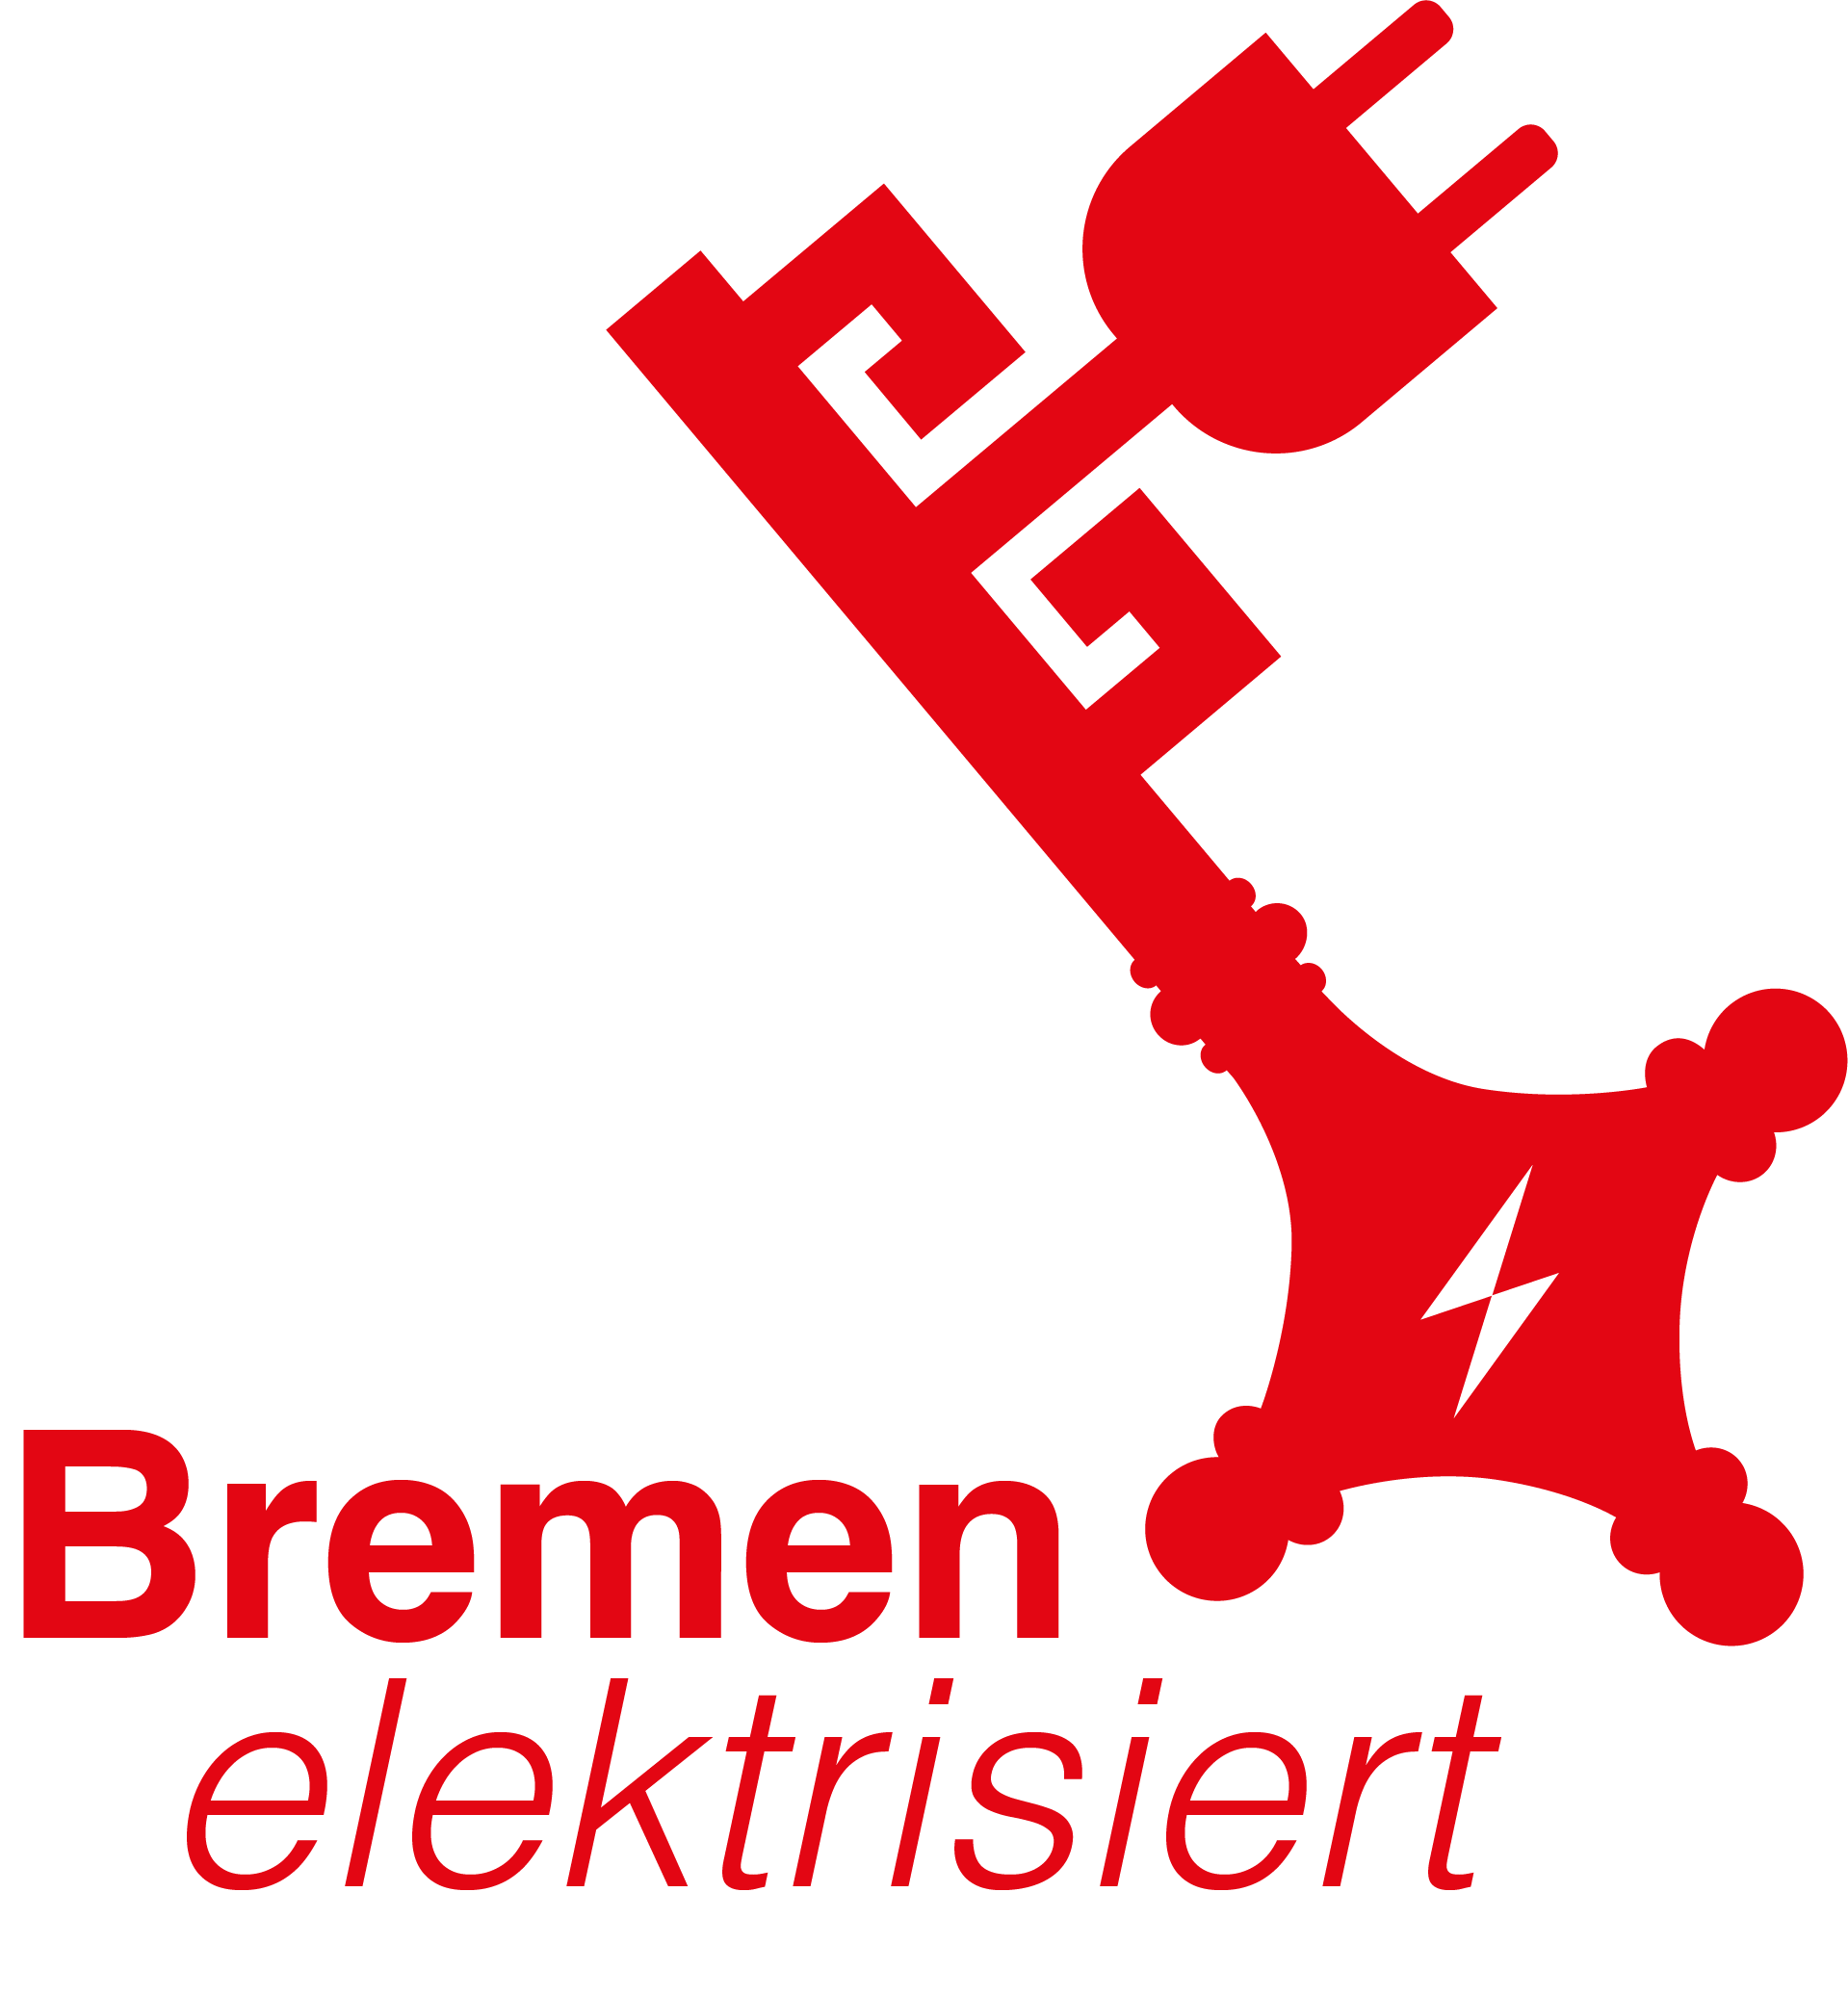 Ladeinfrastrukturkonzept für die Stadt Bremen